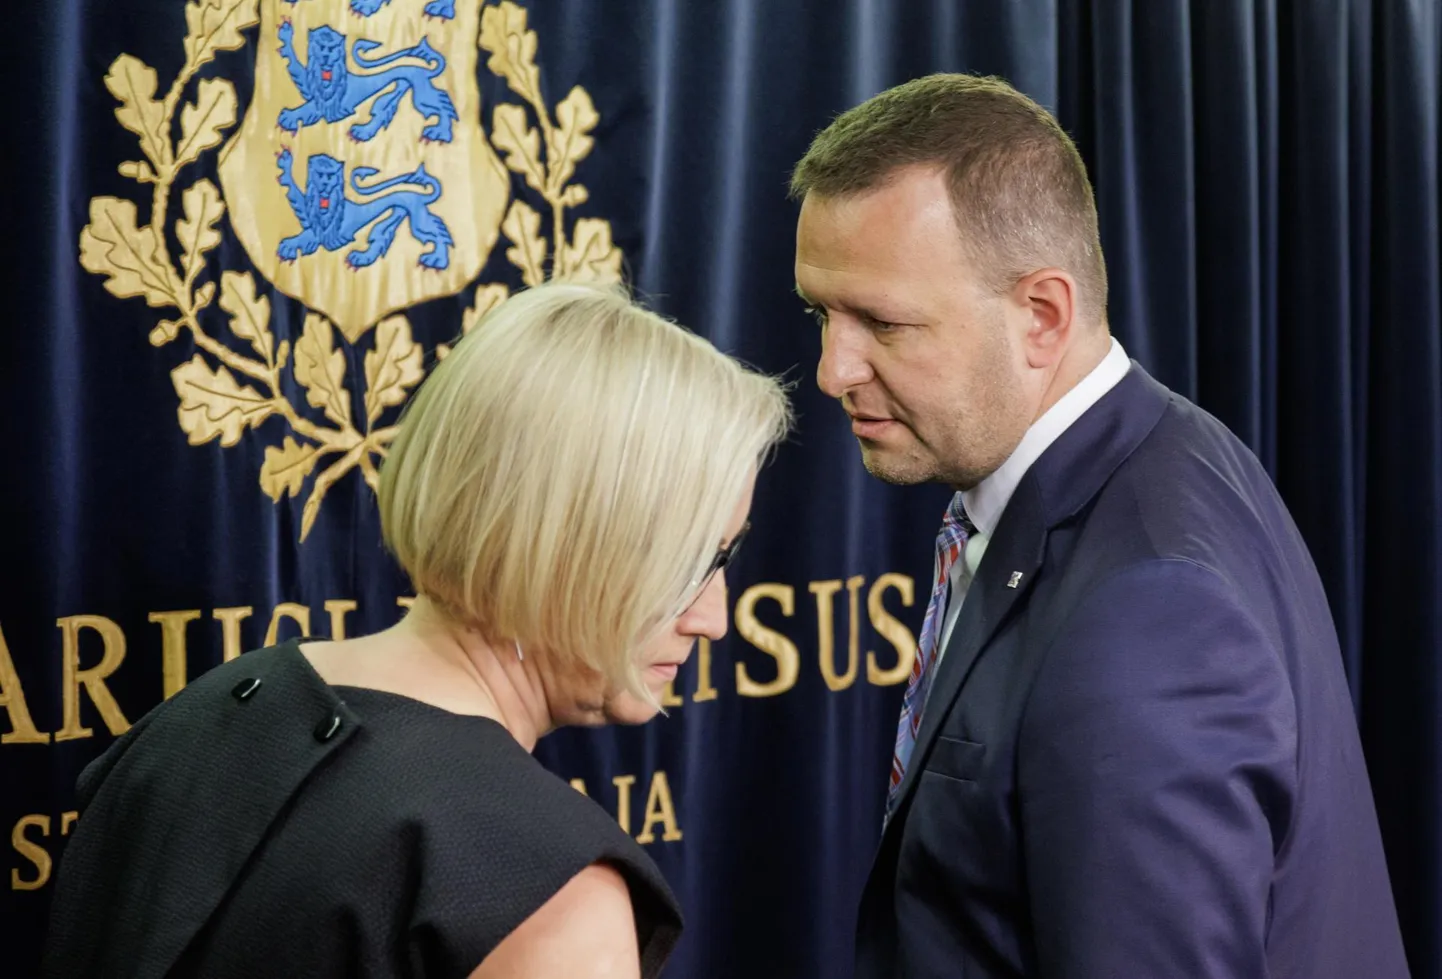 Eesti 200 juhiks kandideeriv Kristina Kallas tõdes, et ei näe sotsidel eesotsas Lauri Läänemetsaga suurt kärpimissoovi.